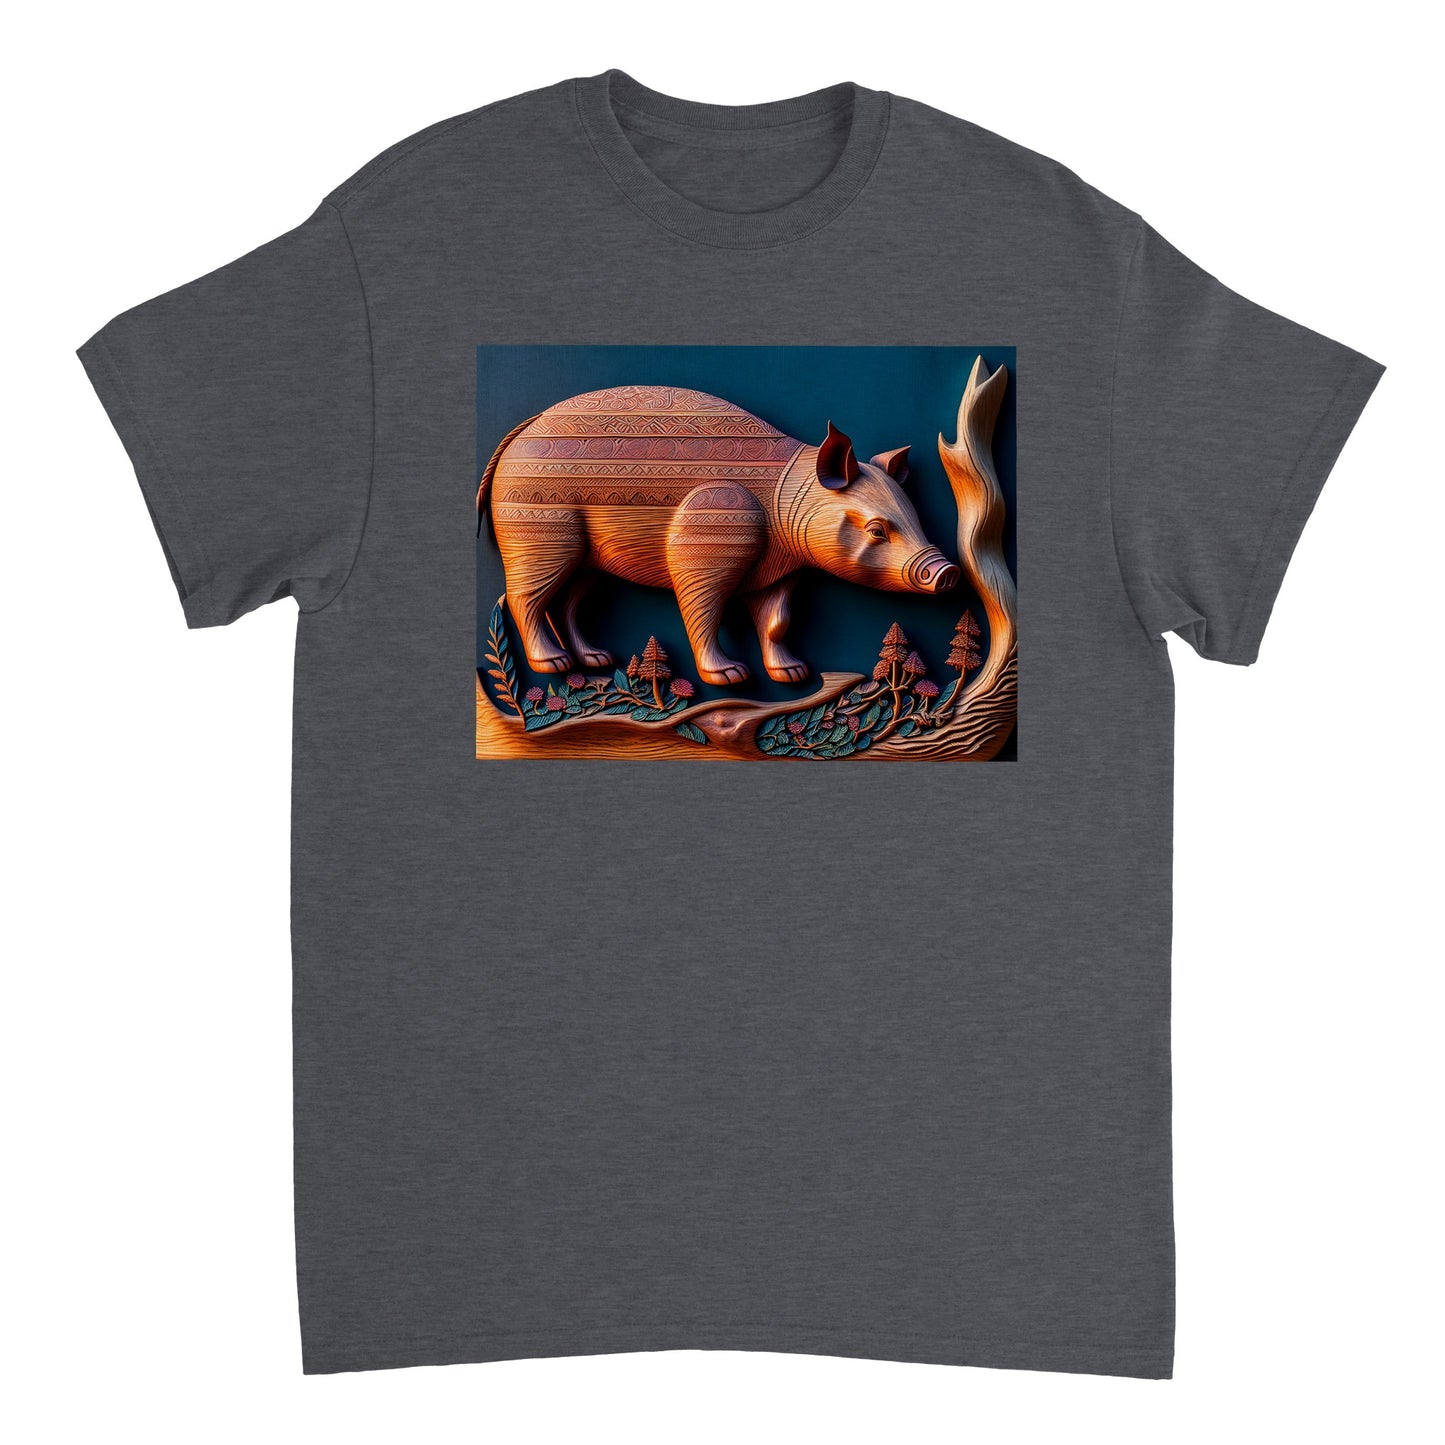 3D Wooden Animal Art - Heavyweight Unisex Crewneck T-shirt 75